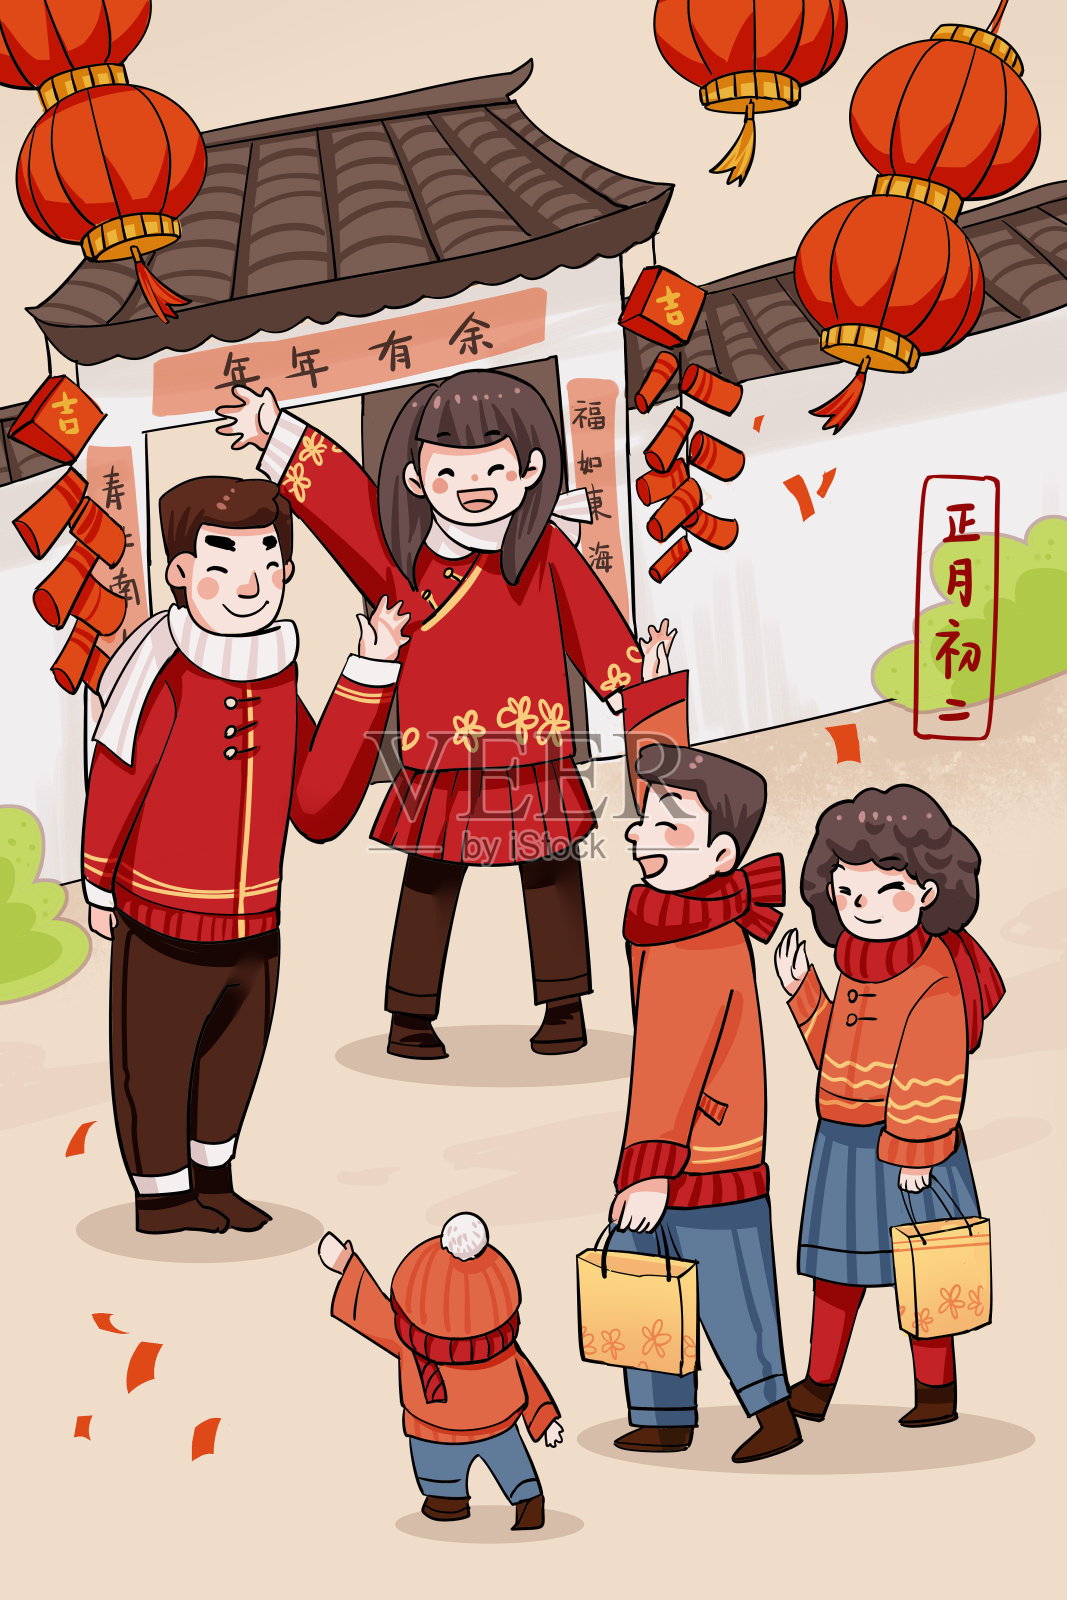 红色正月初二逢年过节走亲访友的习俗插画设计模板素材